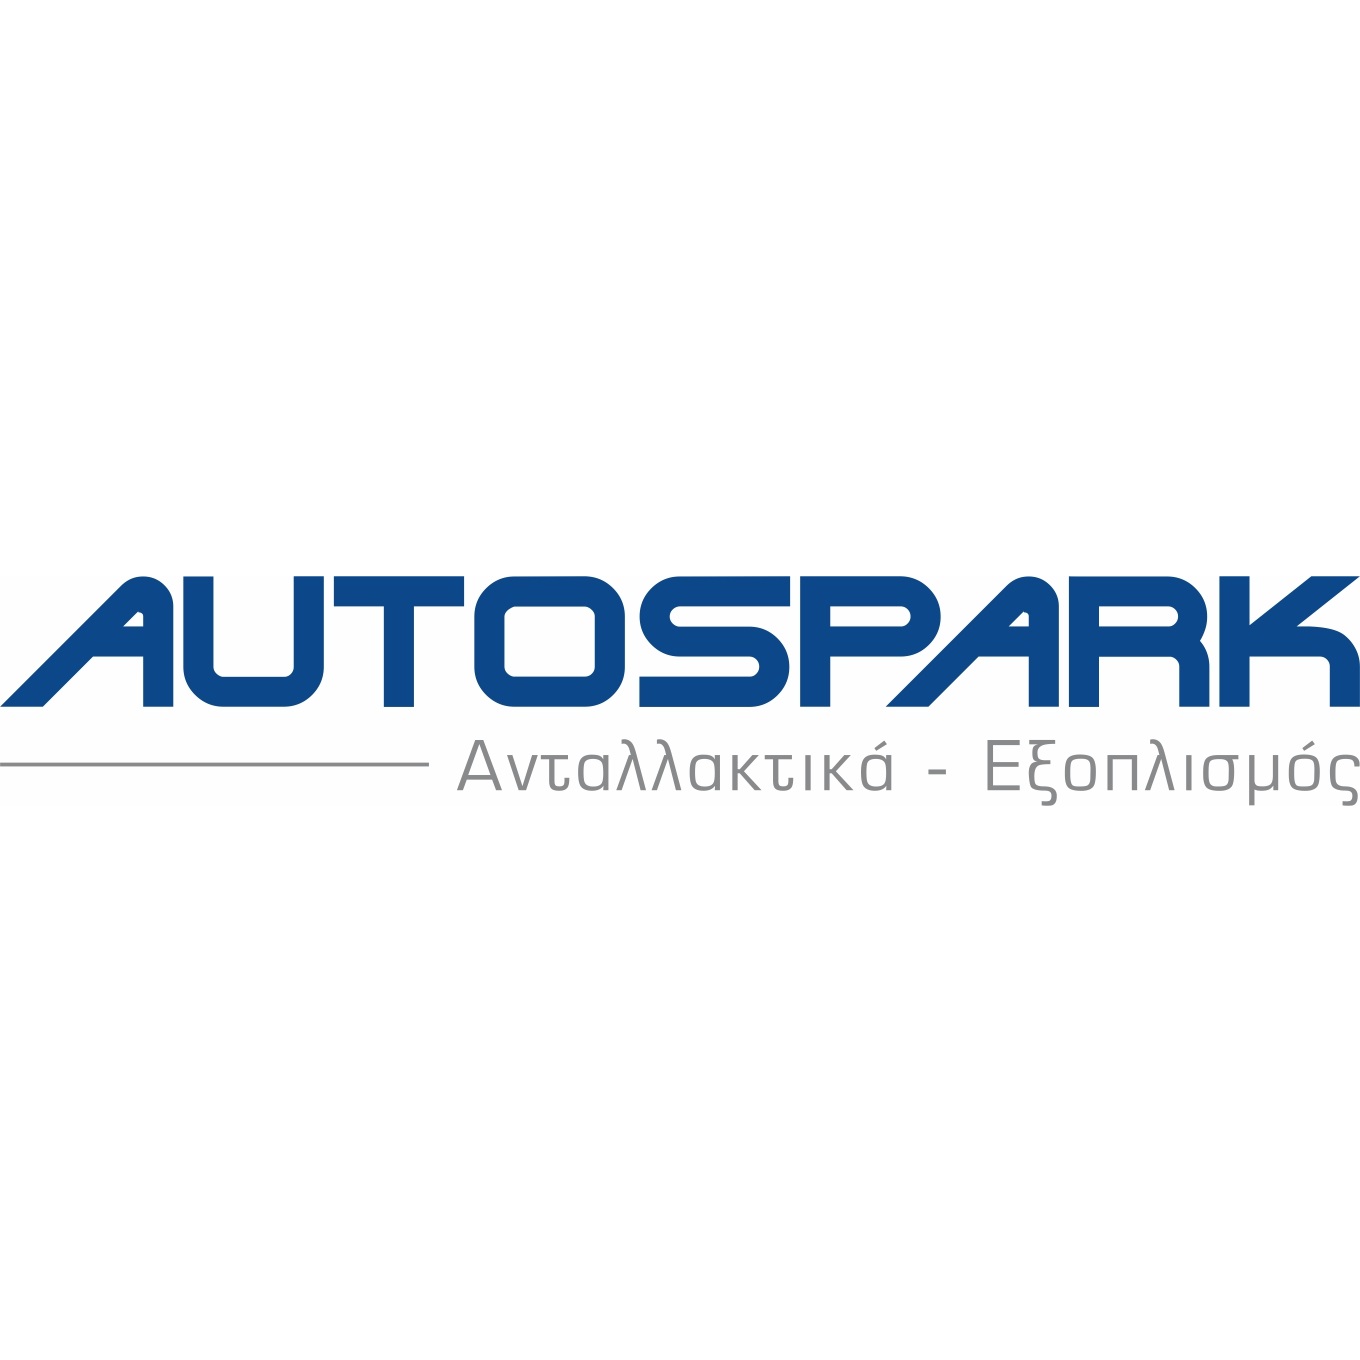 autospark_logo